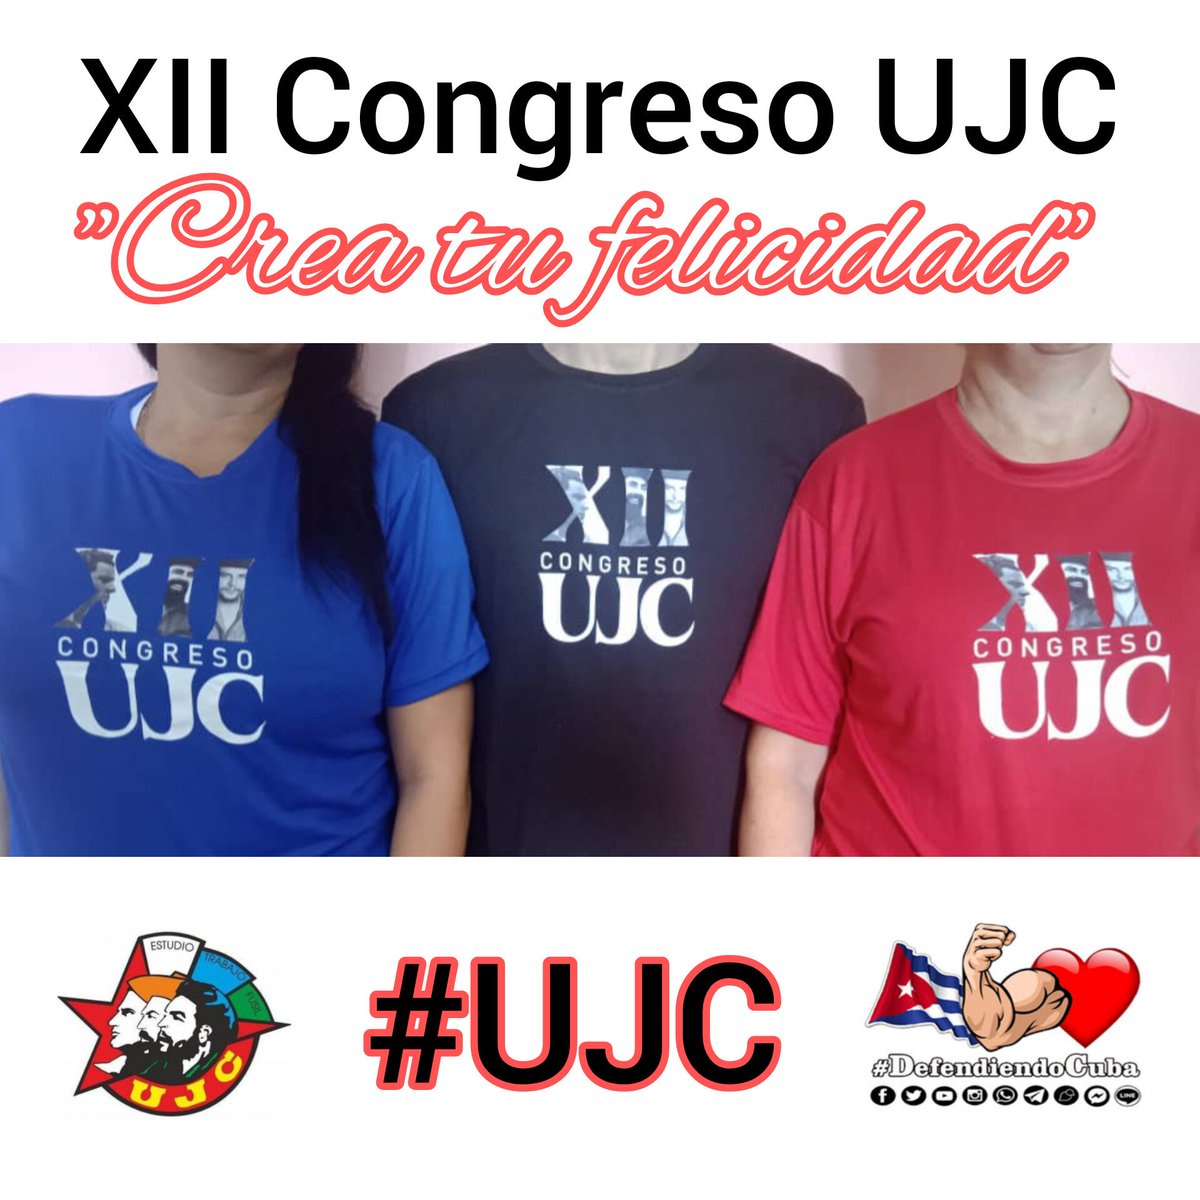 Todo listo #Cuba 👍👍👍👍 XII Congreso UJC al alcance de todos. La juventud Cubana está de fiesta. 🇨🇺🇨🇺'Crea tu felicidad'🇨🇺🇨🇺 Seguimos #DefendiendoCuba 🇨🇺💪❤️